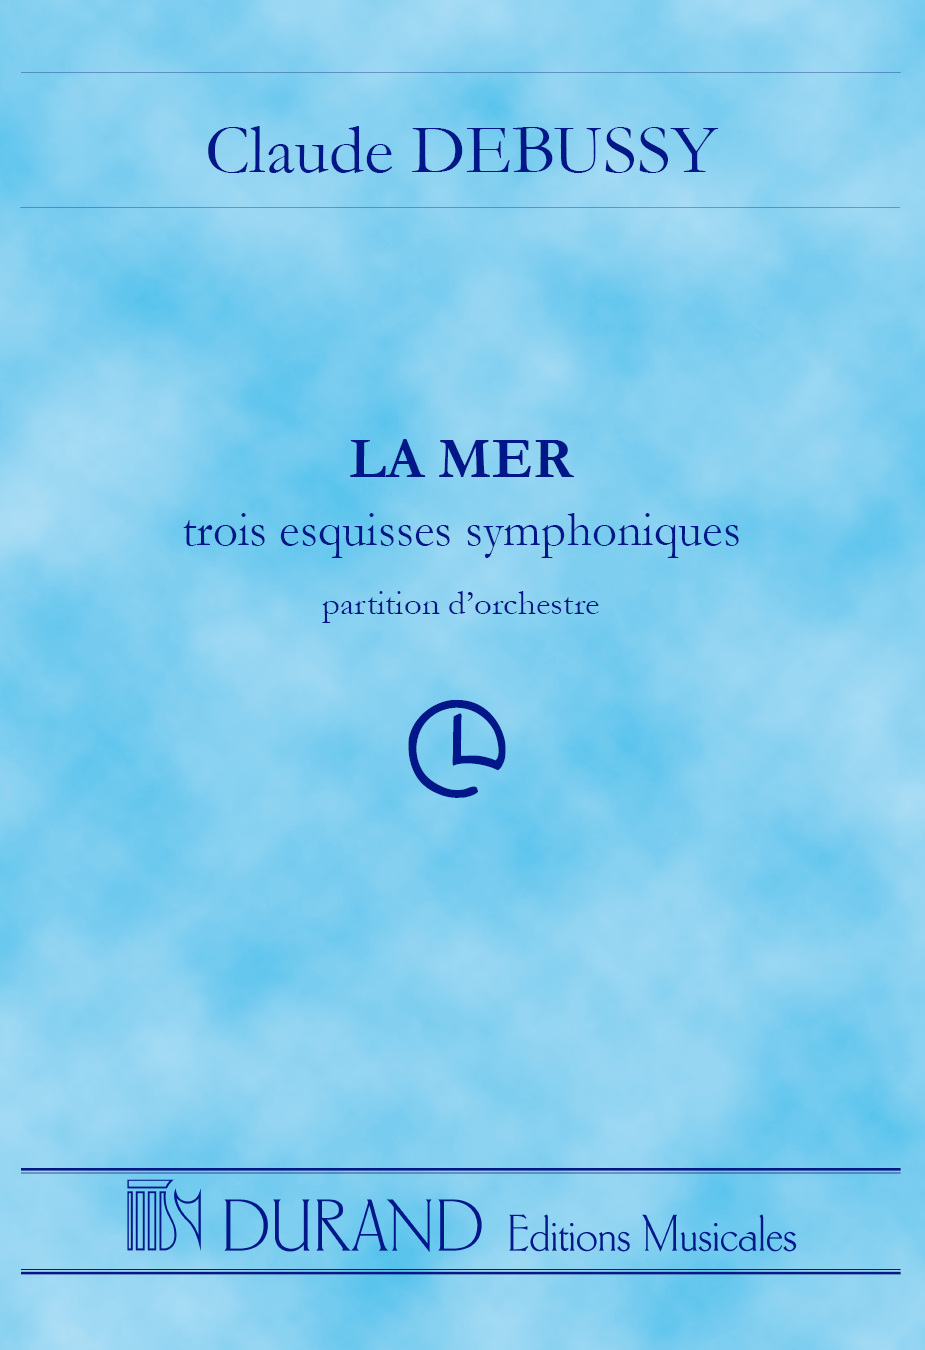 Claude Debussy: La Mer - Partition D'Orchestre: Orchestra: Study Score